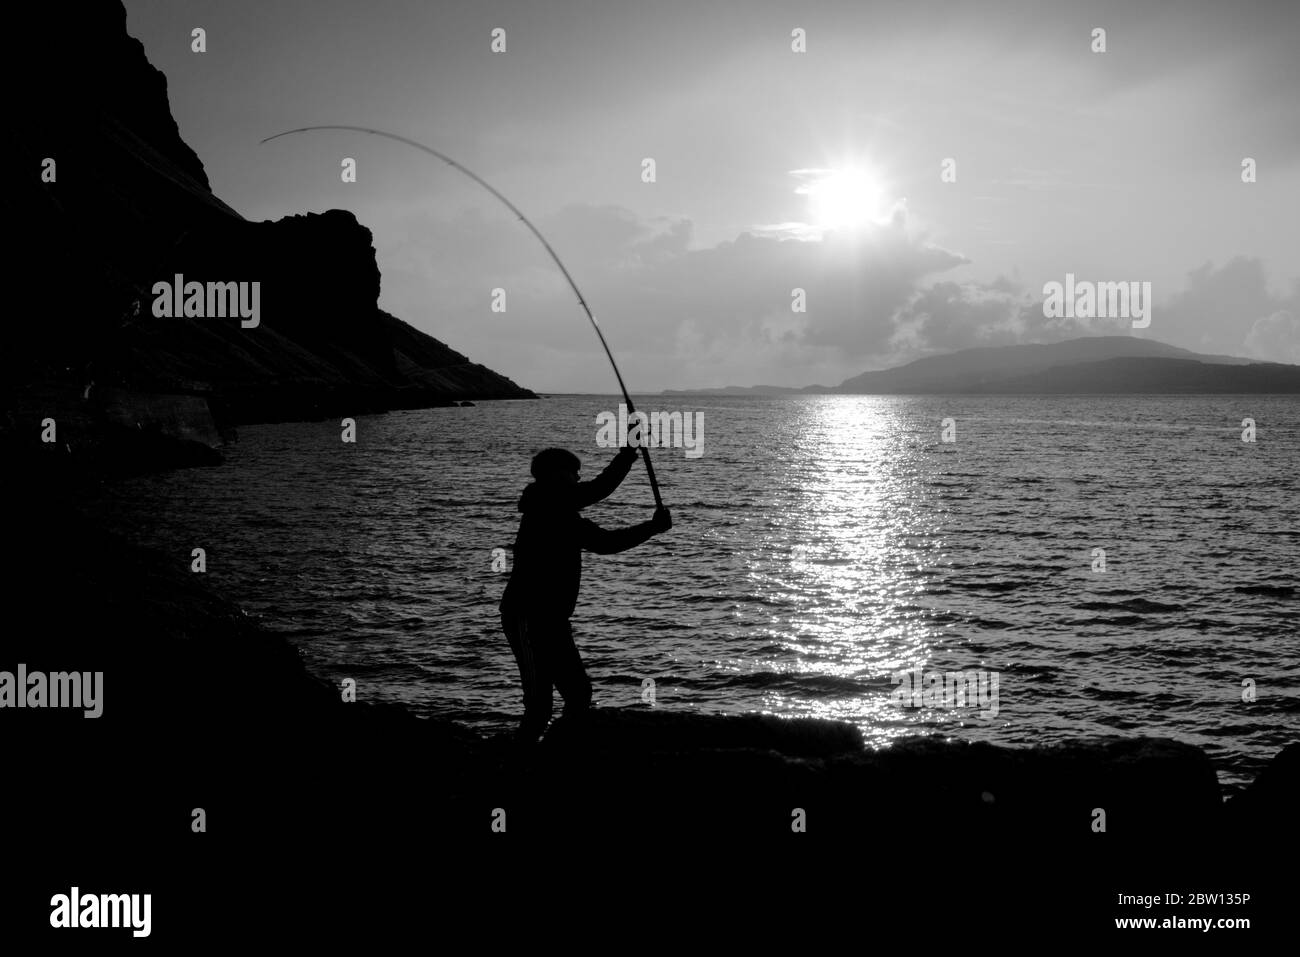 puestas de sol sobre el lago na keal en la isla de la mull como un hombre joven pesca la caballa en blanco y negro Foto de stock